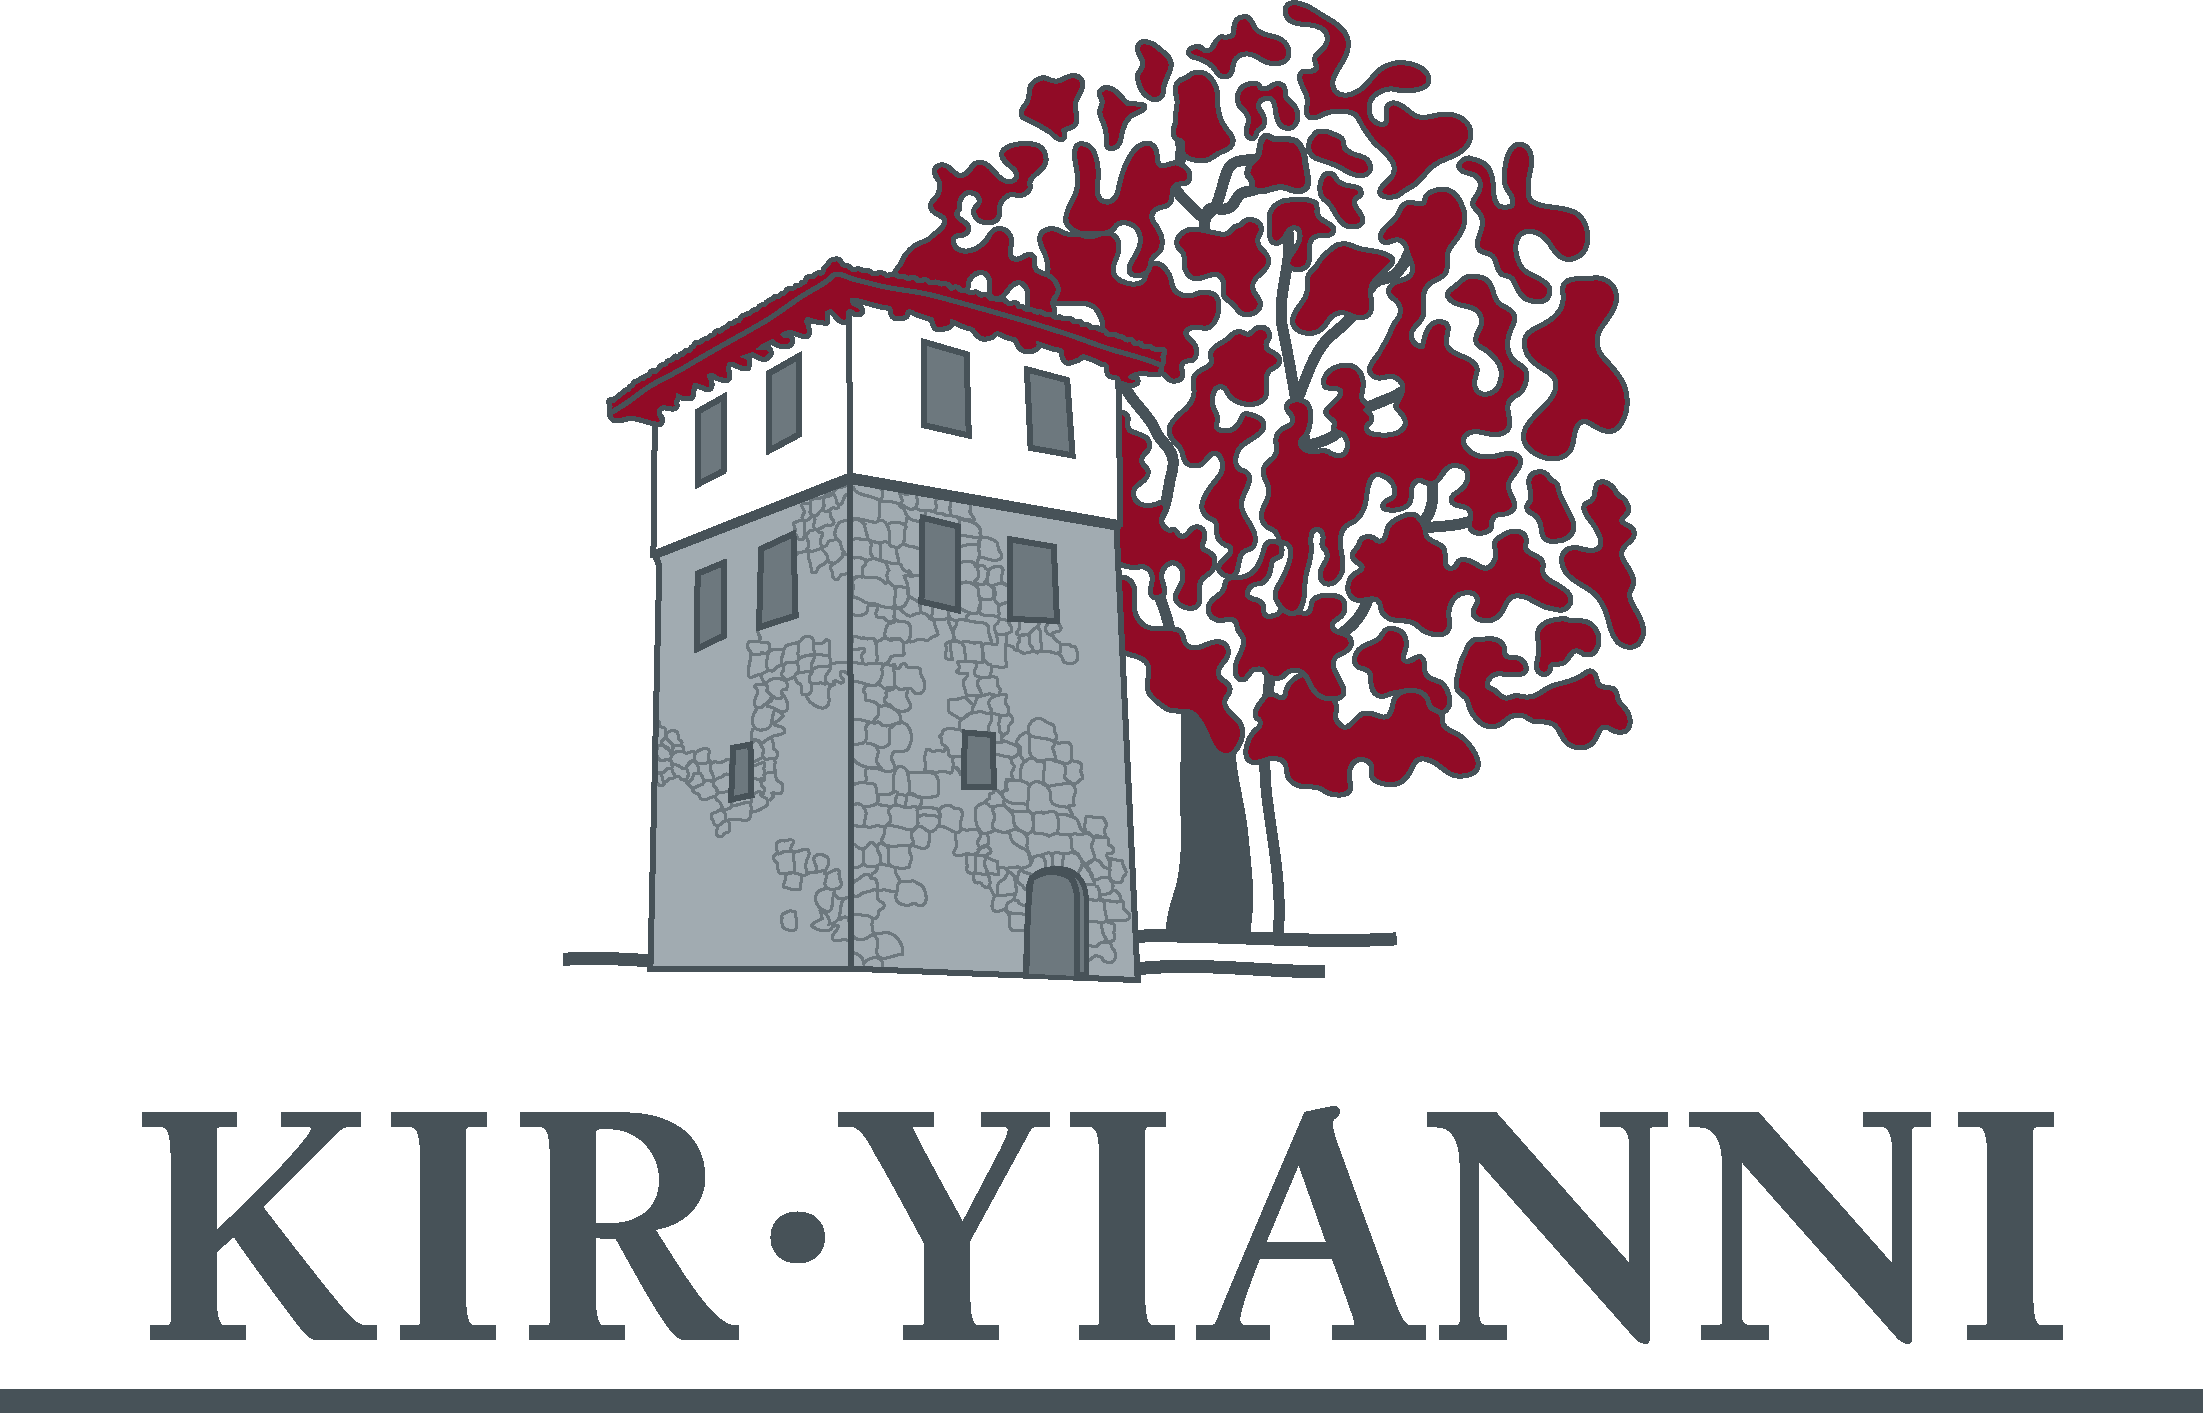 Kir Yianni Estate